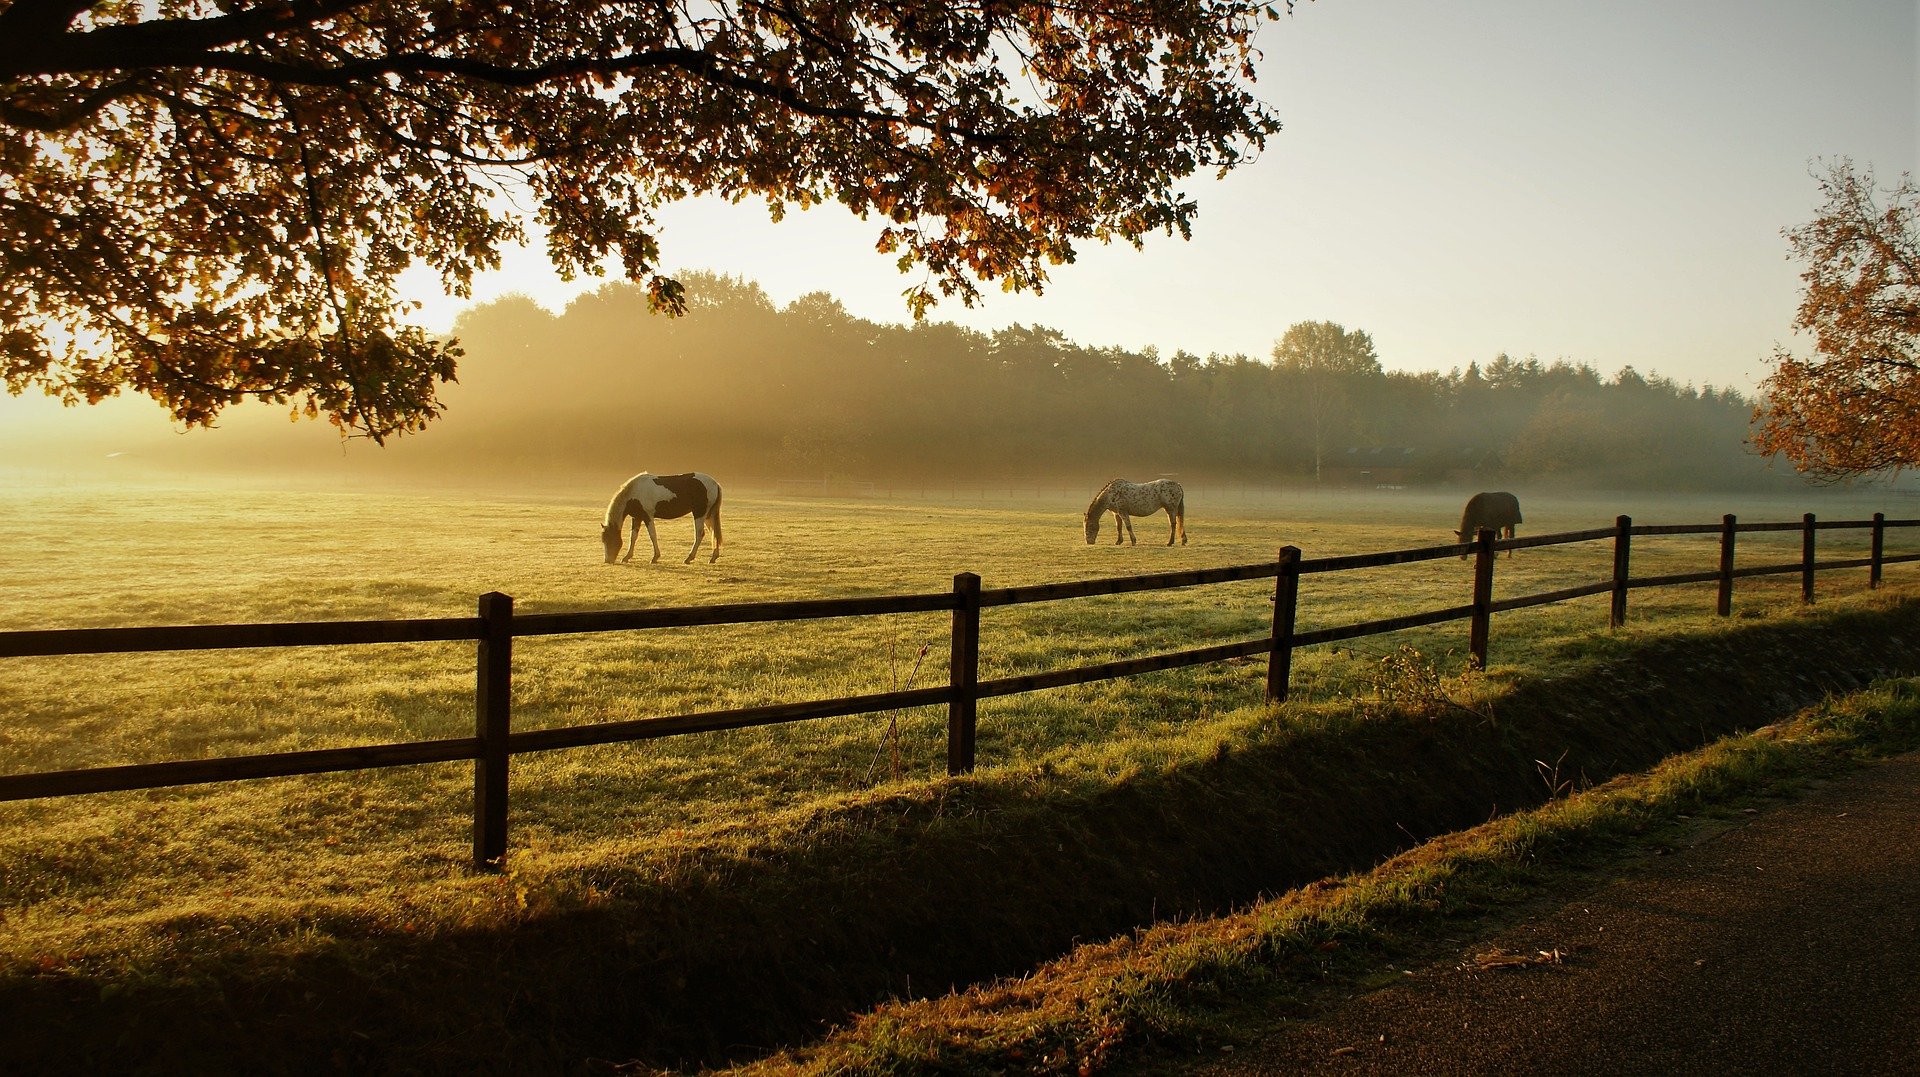 Im Bild - Pferde grasen auf einer Ranch | Quelle: Pixabay 